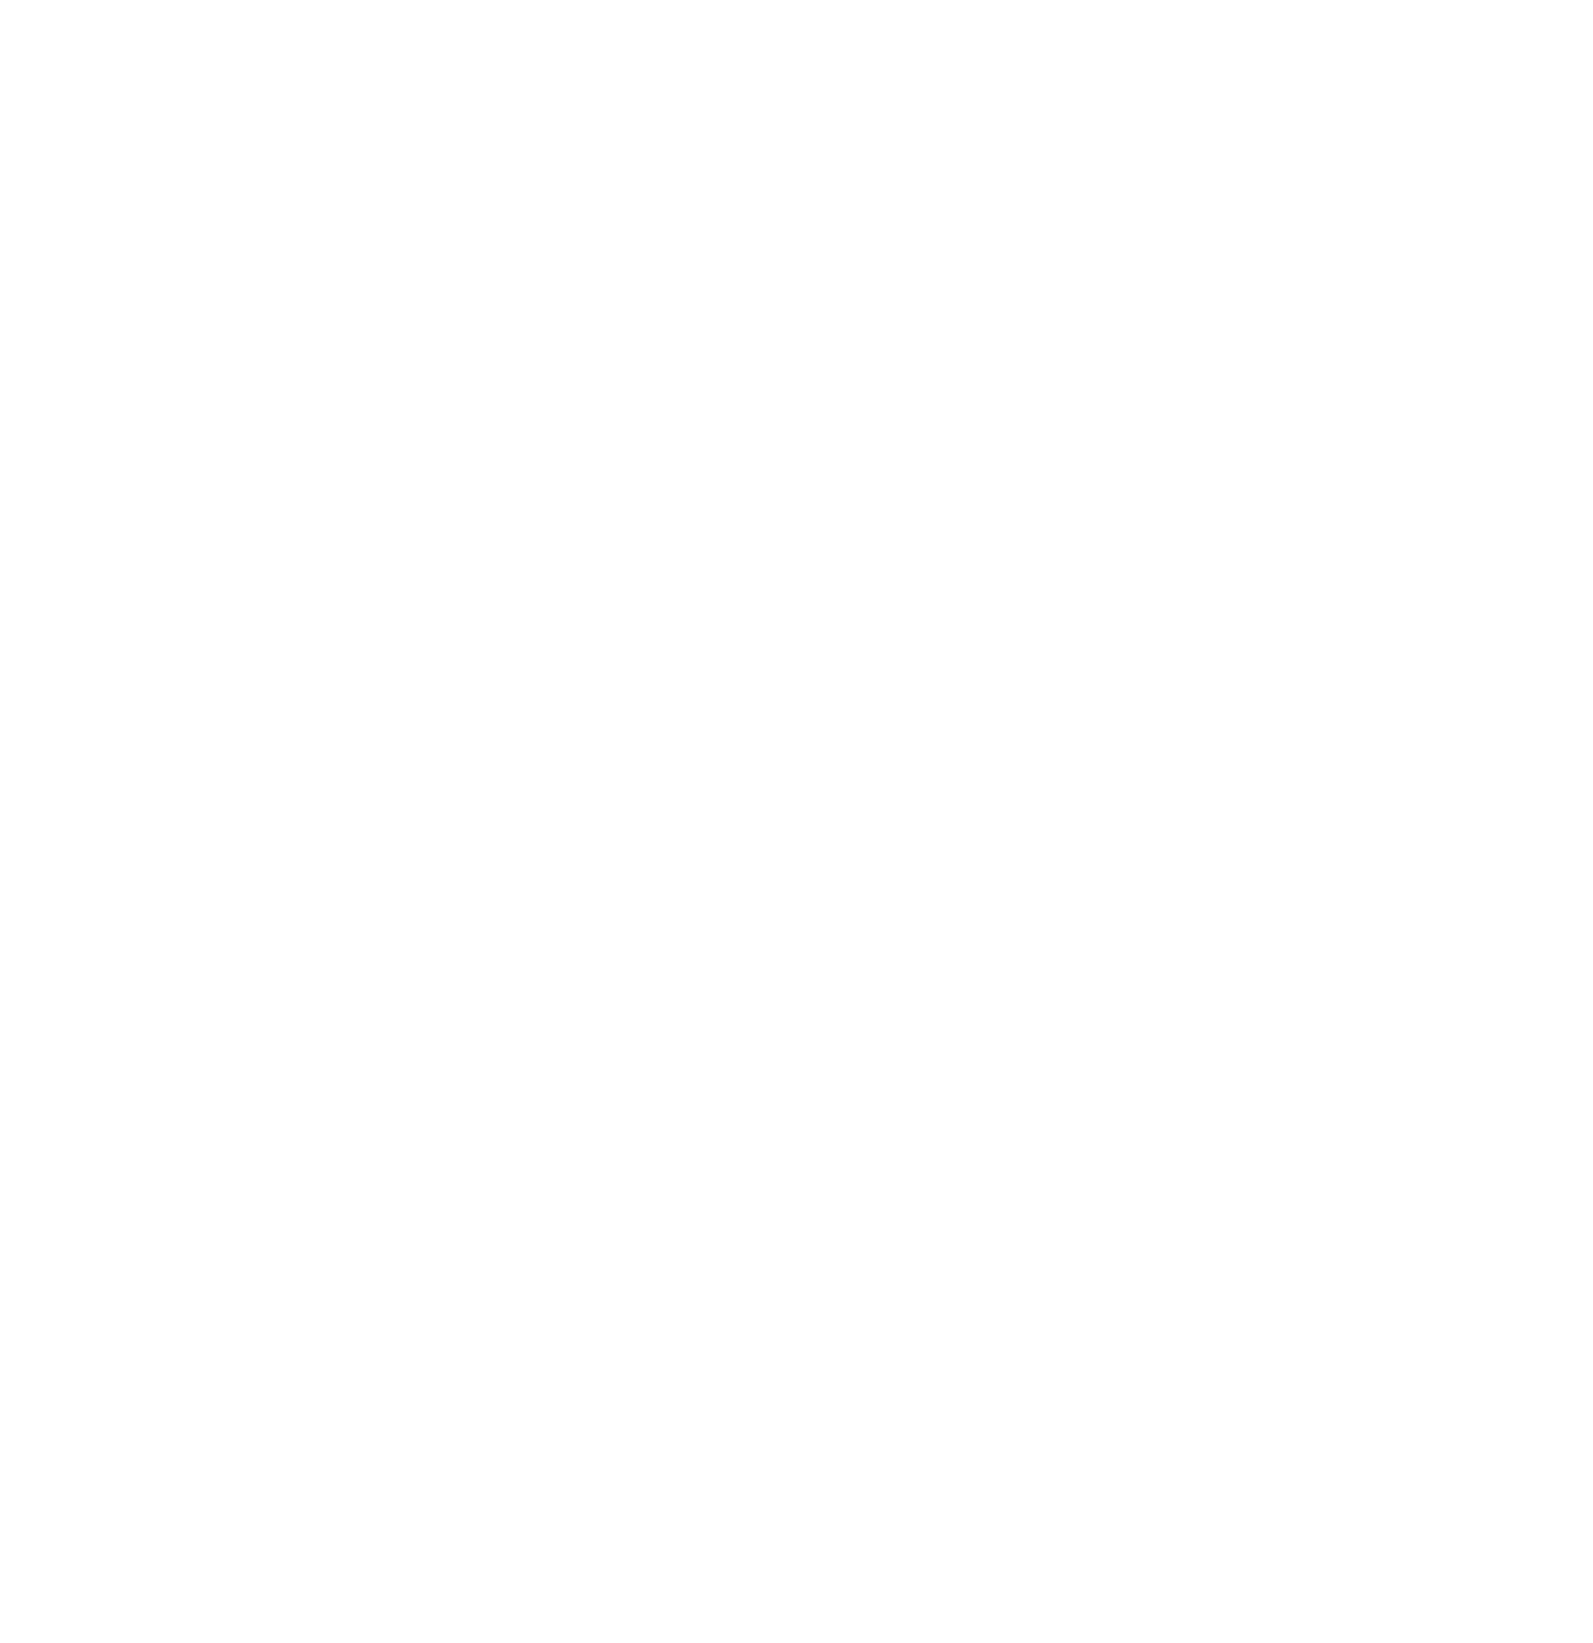 Saint John Society Catholic Church